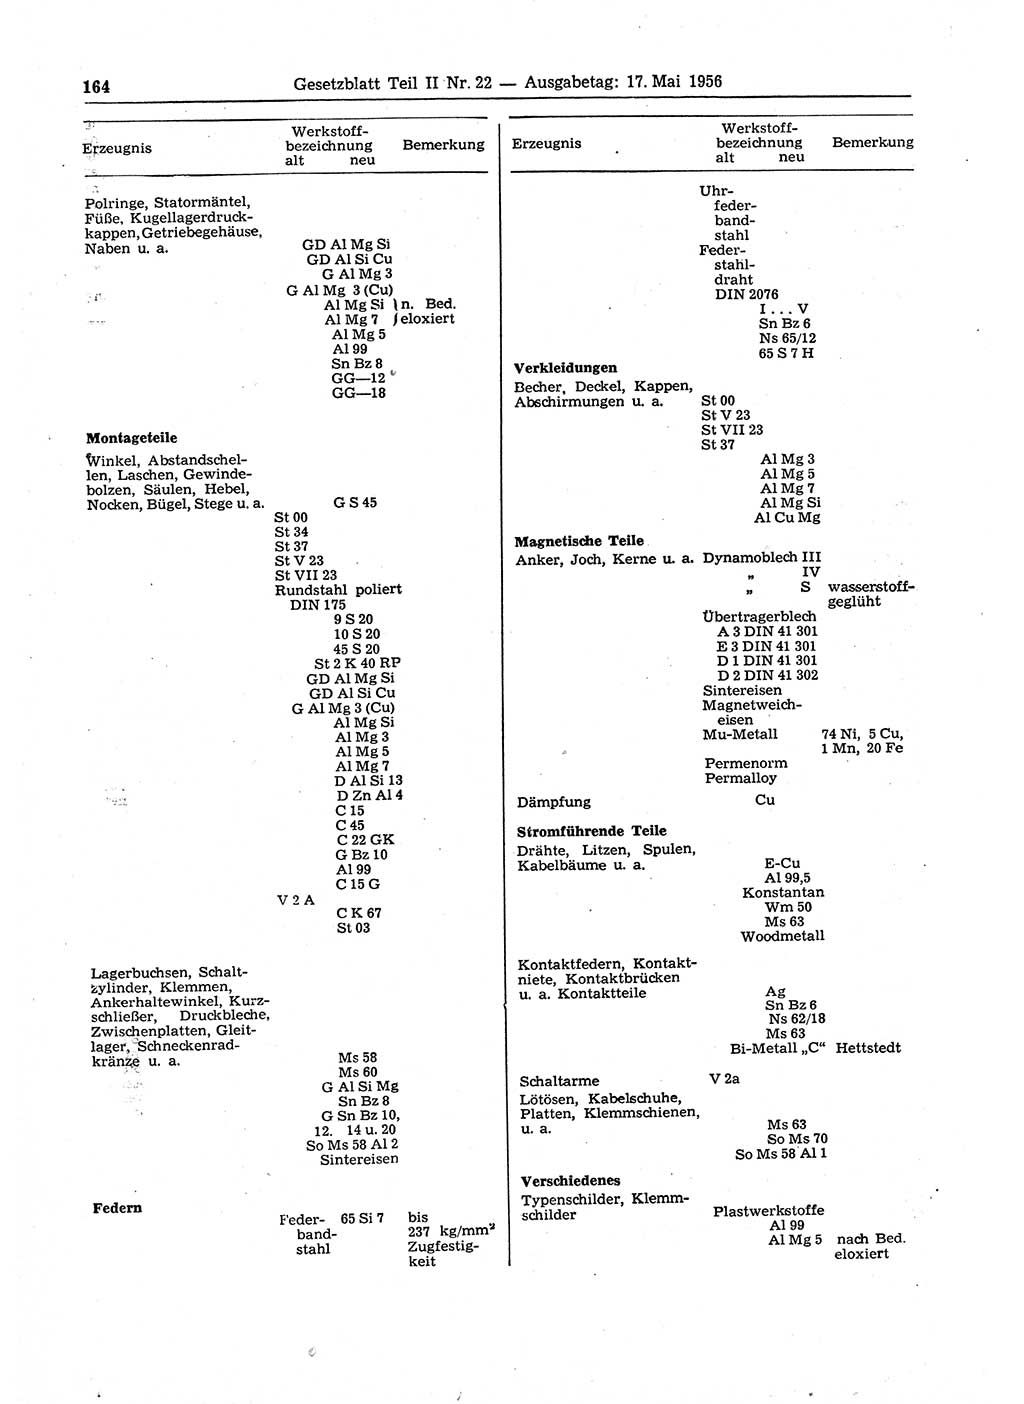 Gesetzblatt (GBl.) der Deutschen Demokratischen Republik (DDR) Teil ⅠⅠ 1956, Seite 164 (GBl. DDR ⅠⅠ 1956, S. 164)